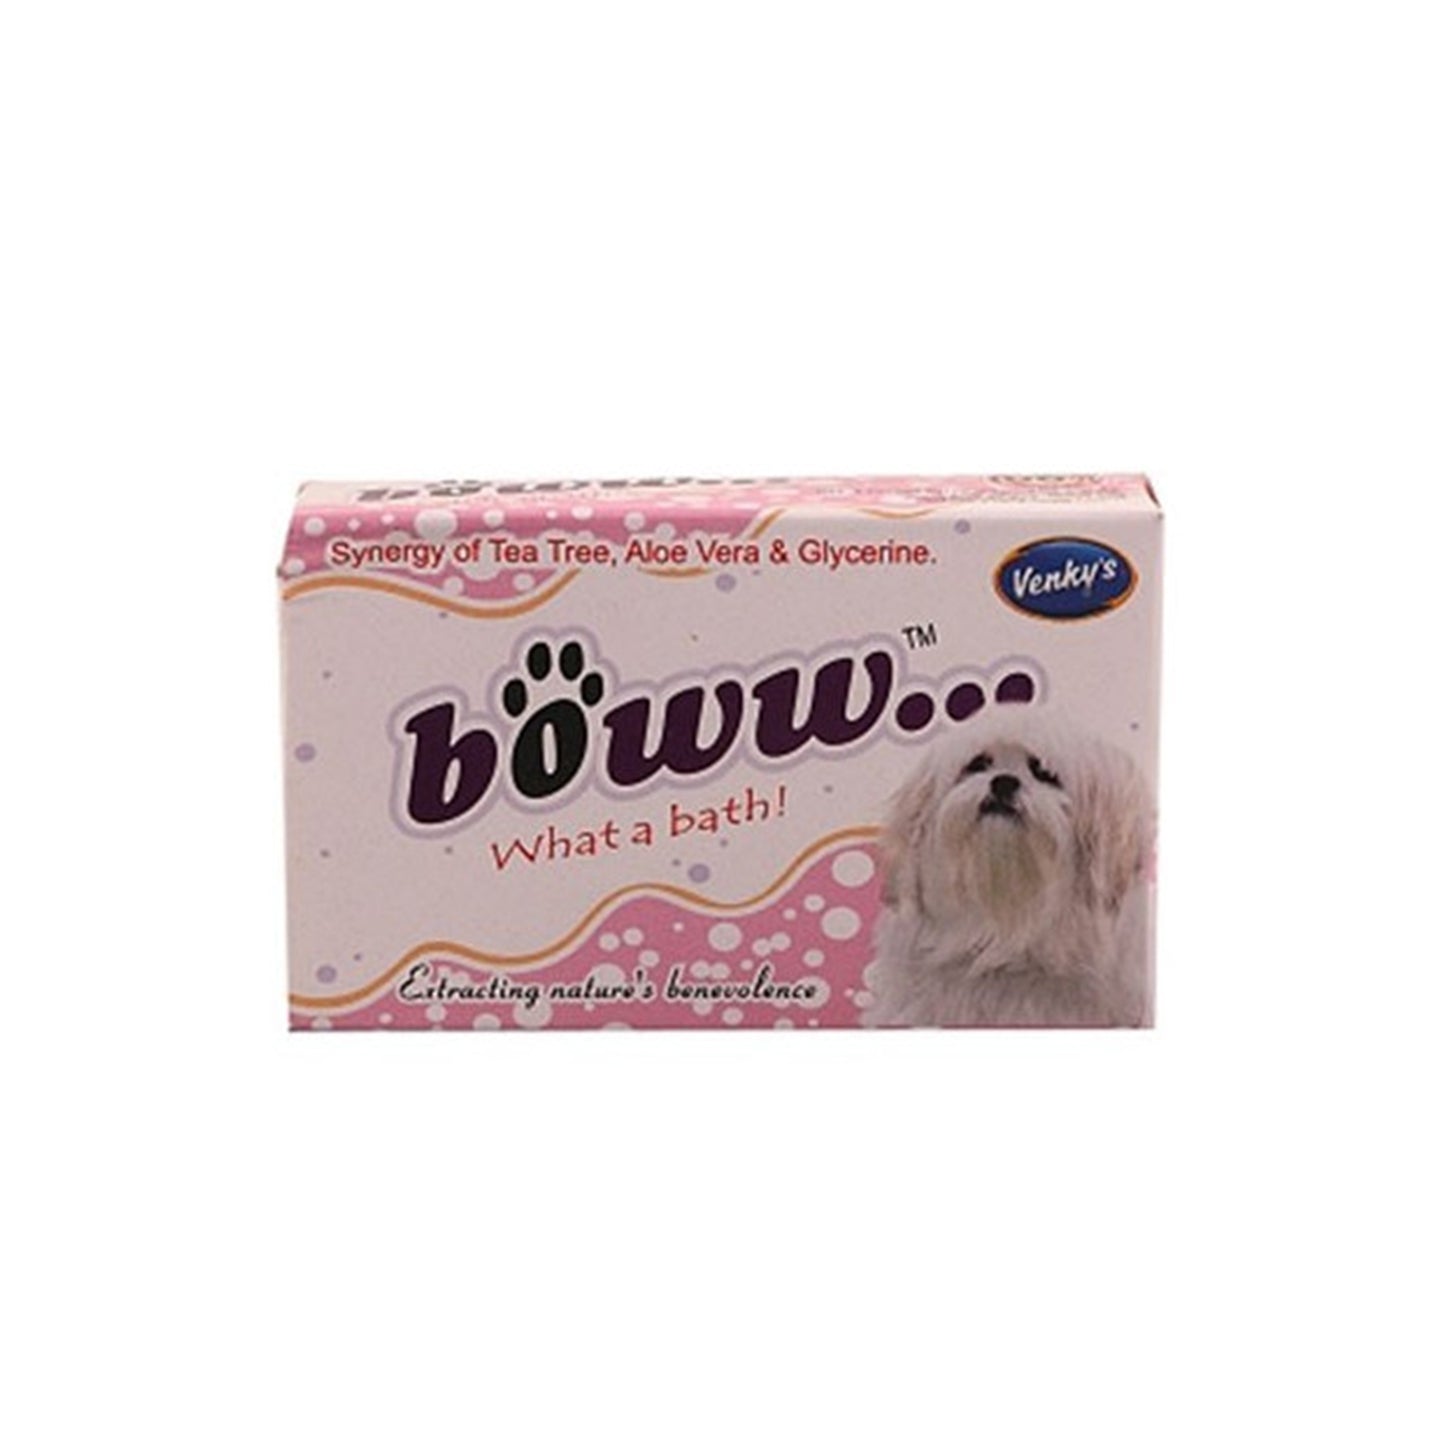 Venkys -  Boww Soap